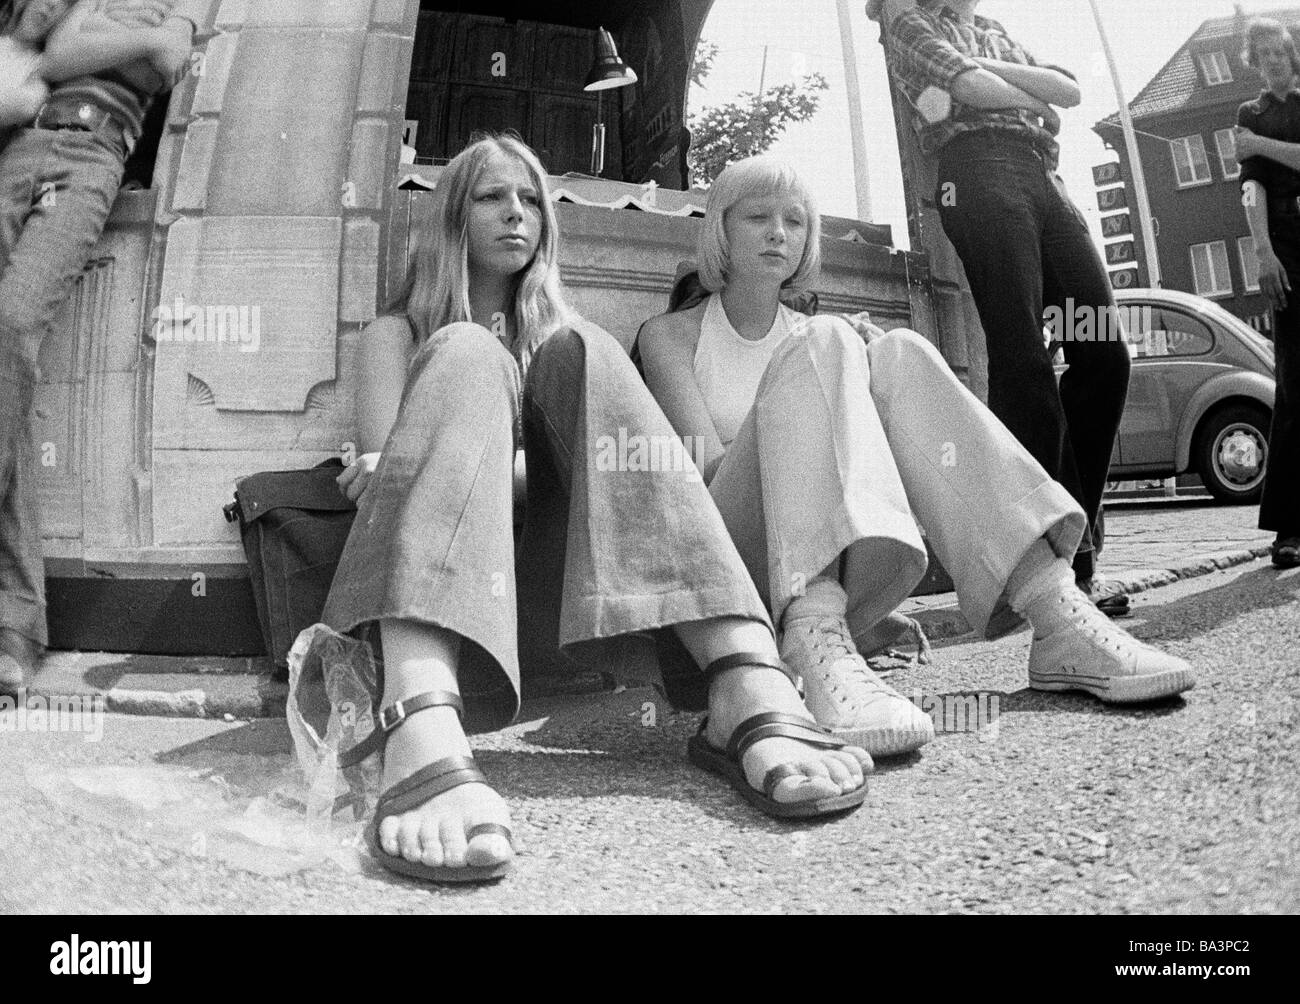 70er Jahre, schwarz / weiß Foto, Menschen, zwei junge Mädchen sitzen am Straßenrand, Stiefel, Hosen, Sandalen, Leinenschuhe, Hose, im Alter von 16 bis 18 Jahre Stockfoto